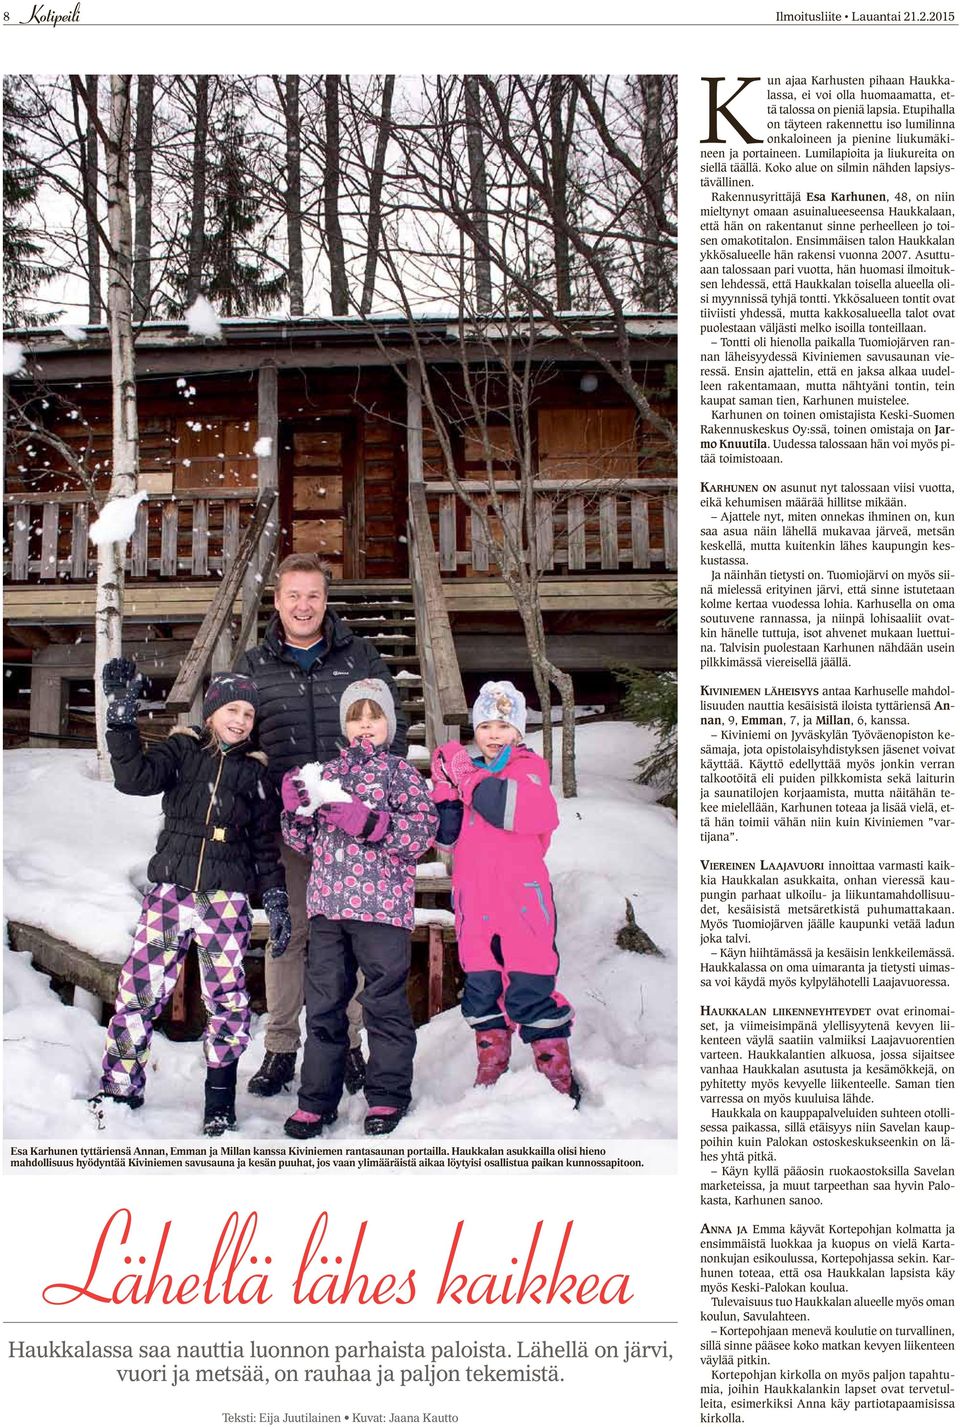 Rakennusyrittäjä Esa arhunen, 48, on niin mieltynyt omaan asuinalueeseensa Haukkalaan, että hän on rakentanut sinne perheelleen jo toisen omakotitalon.